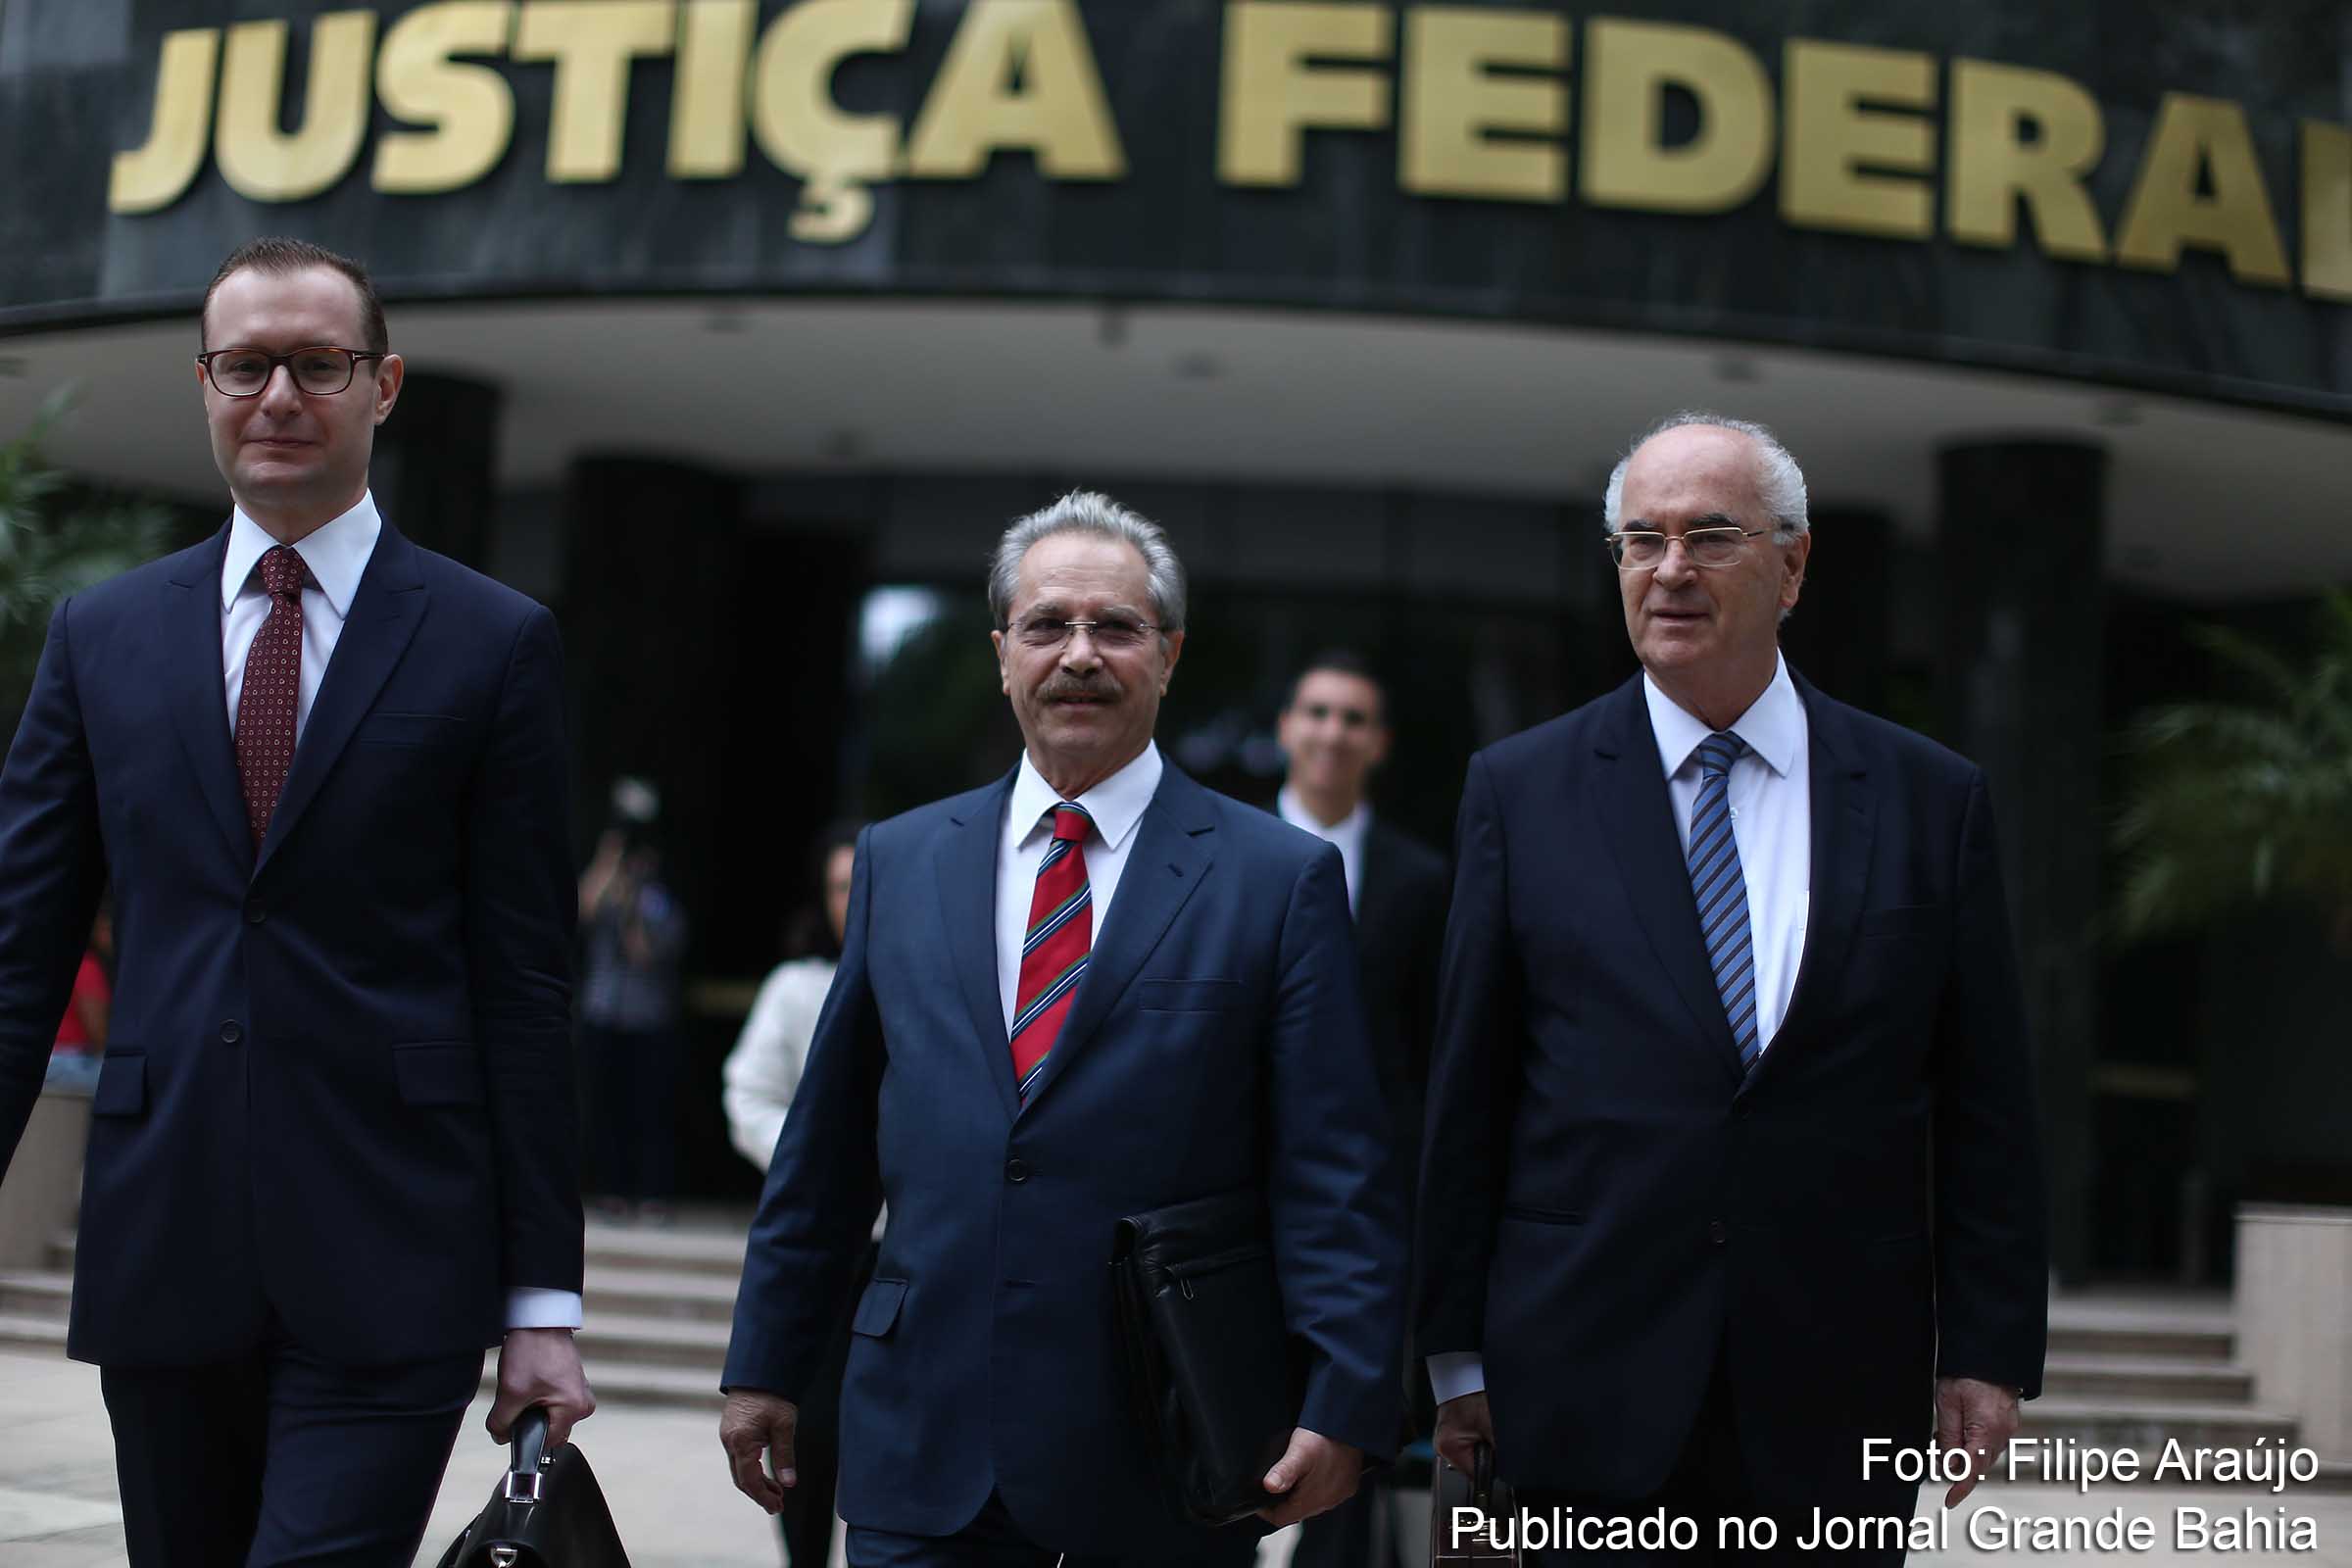 Advogados Cristiano Zanin Martins, , Roberto Teixeira e Cirino dos Santos criticam atuação do MPF e do juiz Sérgio Moro.